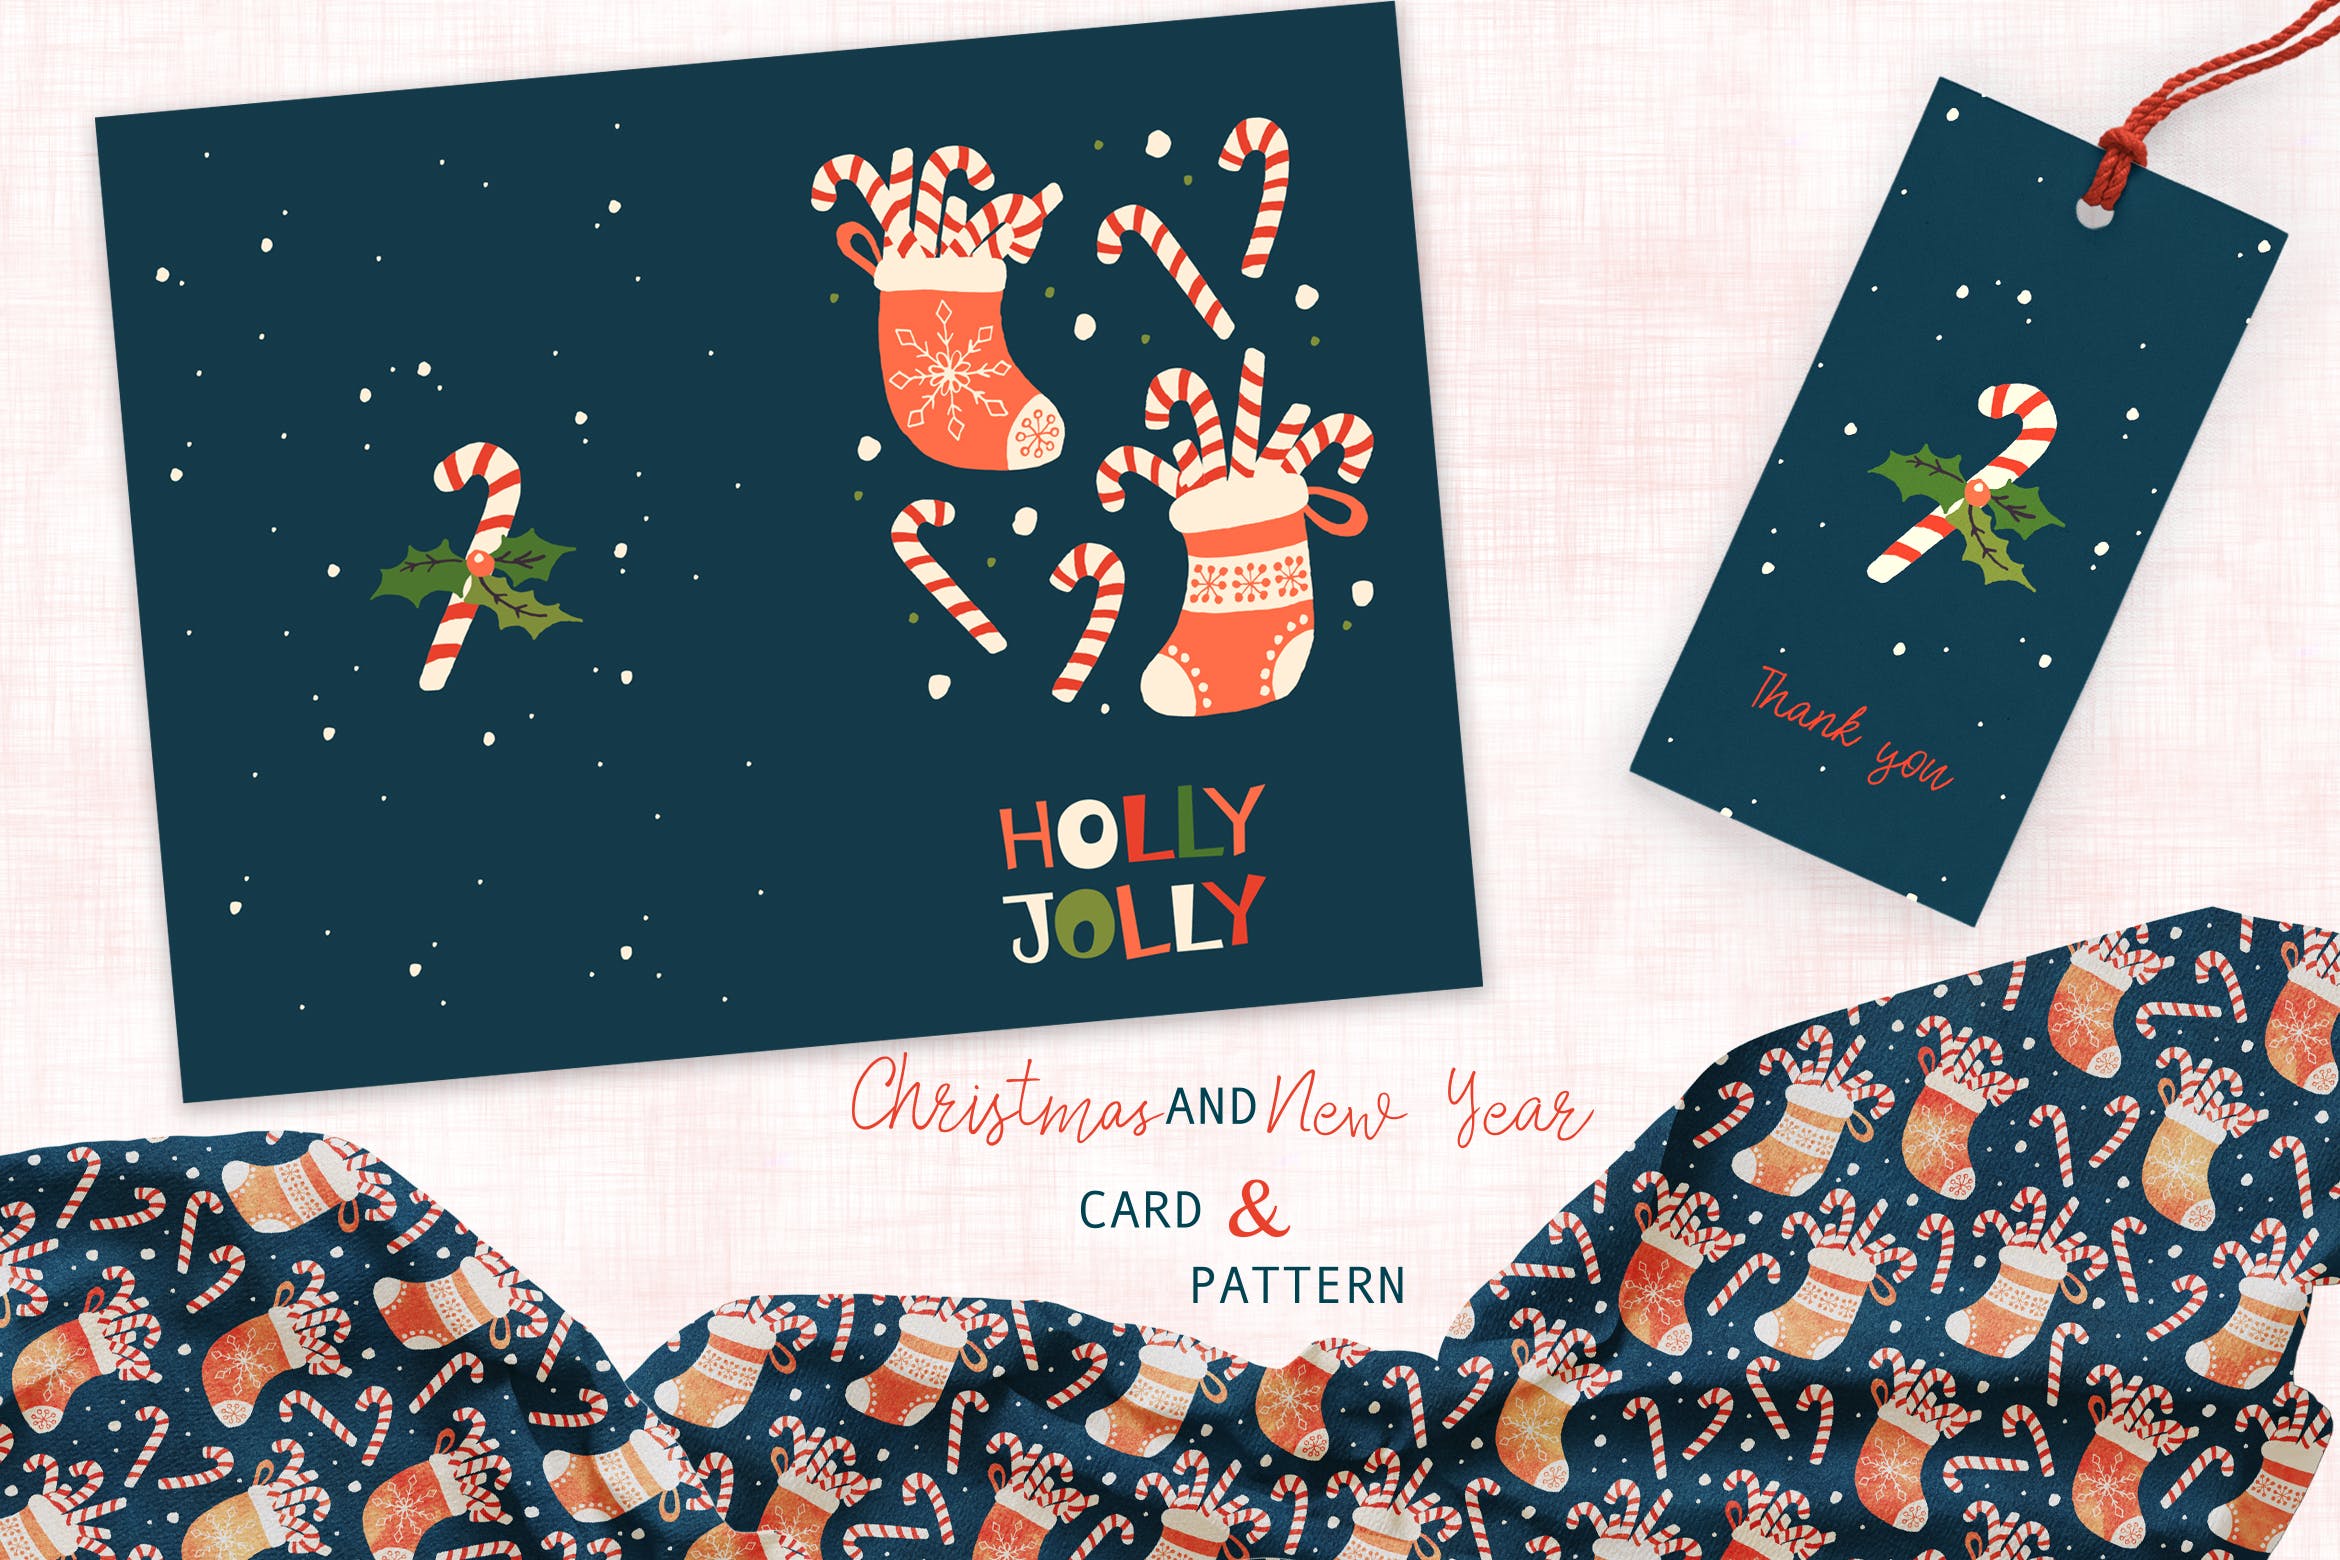 圣诞袜子&圣诞拐杖糖手绘图案背景素材/卡片设计模板 Christmas Stocking card and pattern插图